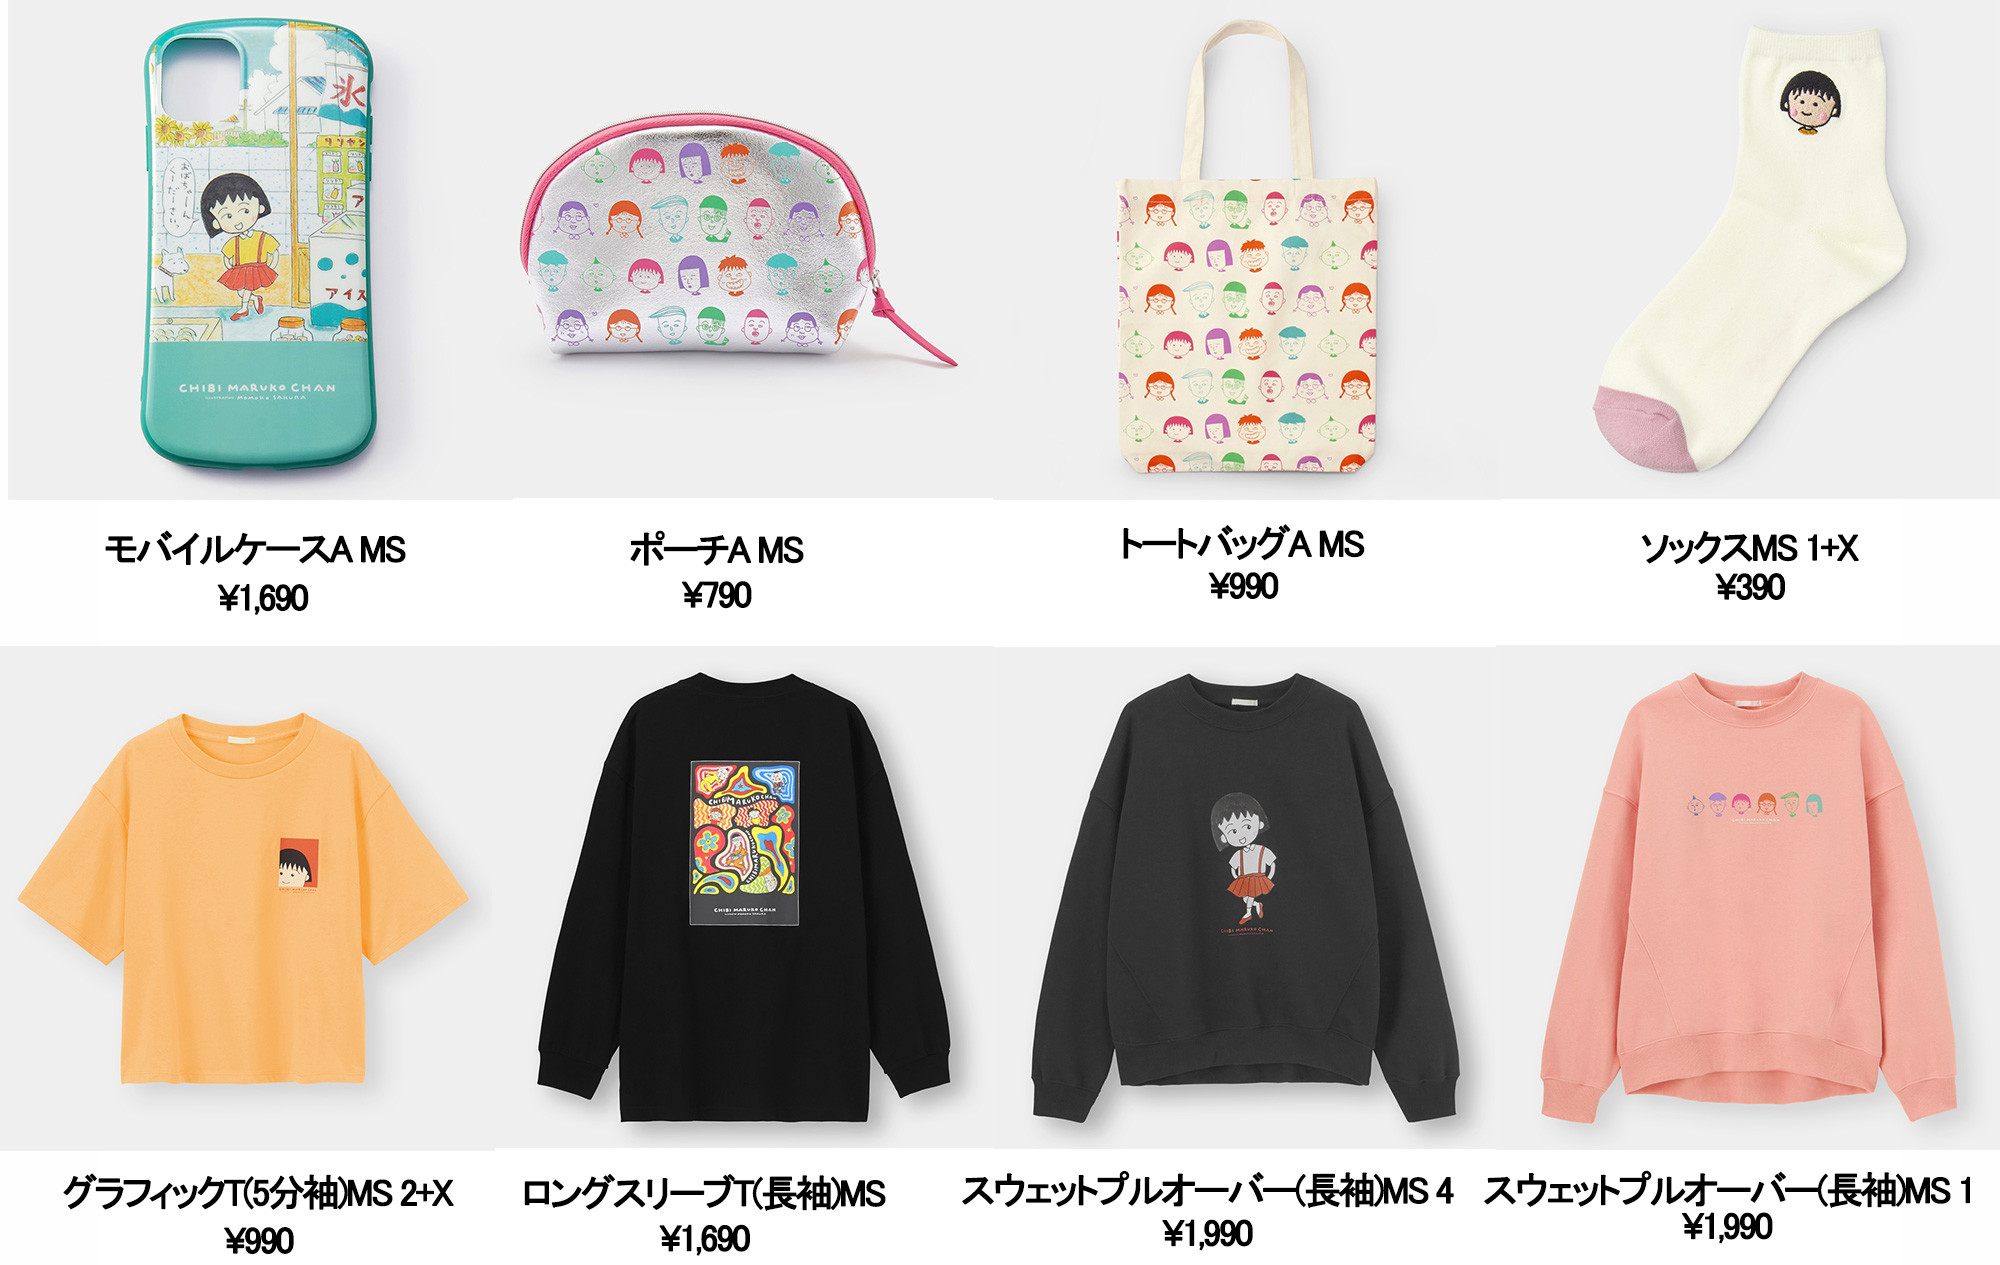 ちびまる子ちゃん と コジコジ がguとコラボレーション Momoko Sakuraコレクションを発表 最新情報 ちびまる子ちゃん オフィシャルサイト